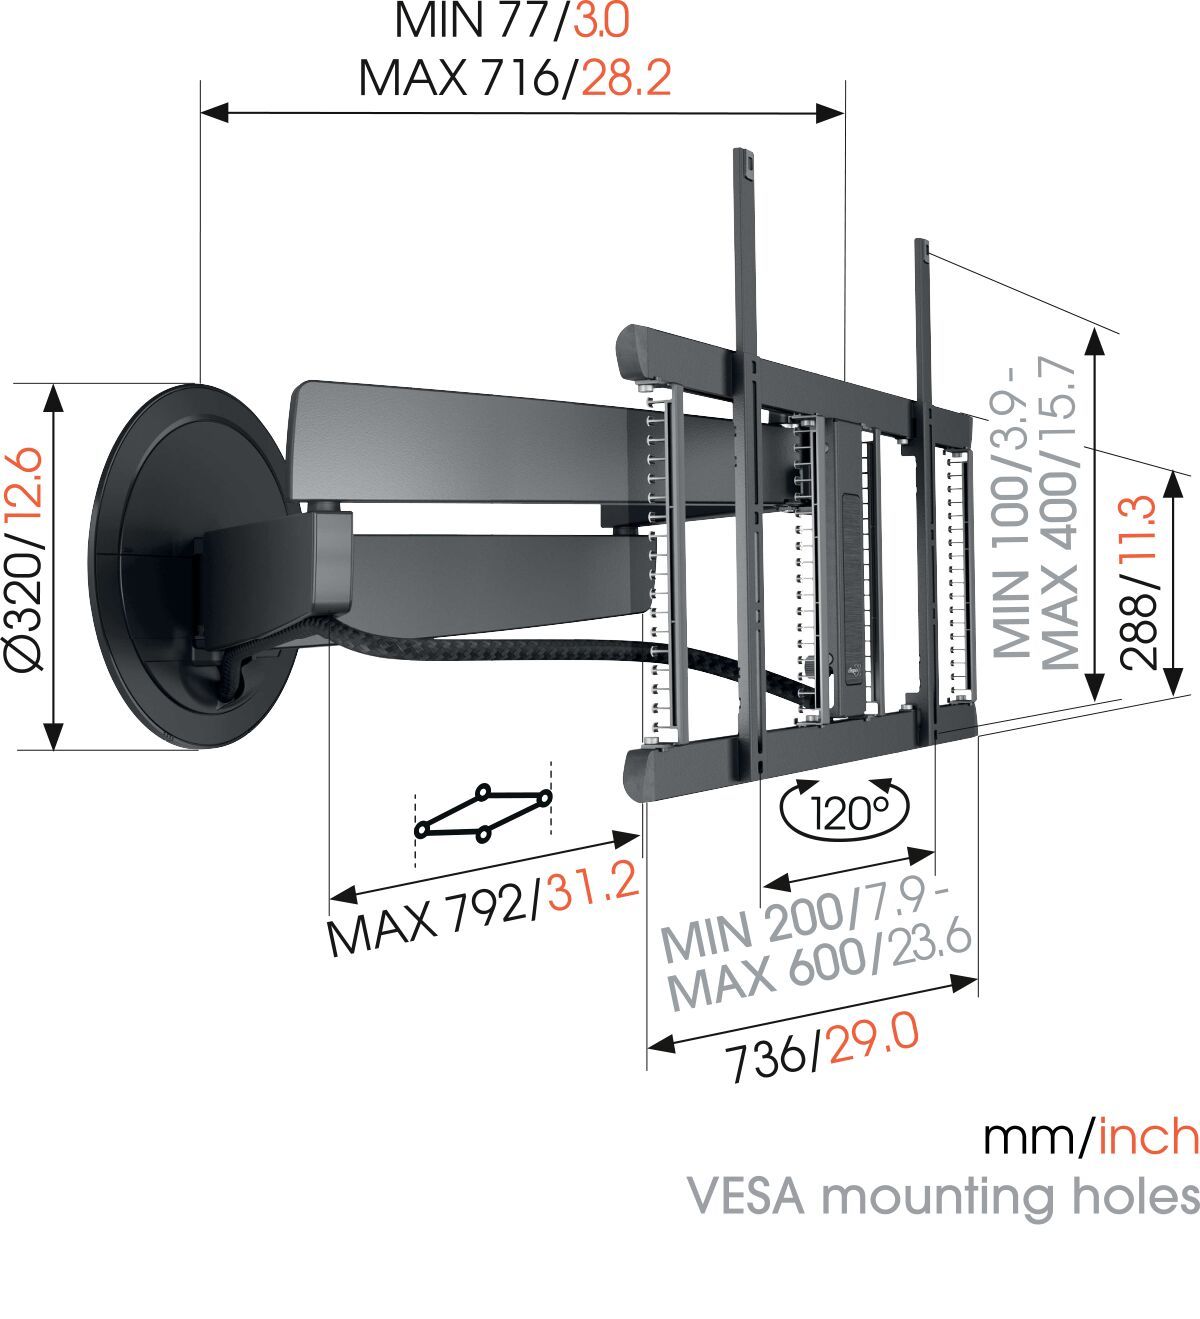 Vogel's TVM 7655 Schwenkbare TV-Wandhalterung (Schwarz) - Geeignet für Fernseher von 40 bis 77 Zoll und einem Gewicht bis zu 35 kg - Nach vorne beweglich und drehbar (bis zu 120°) - Dimensions